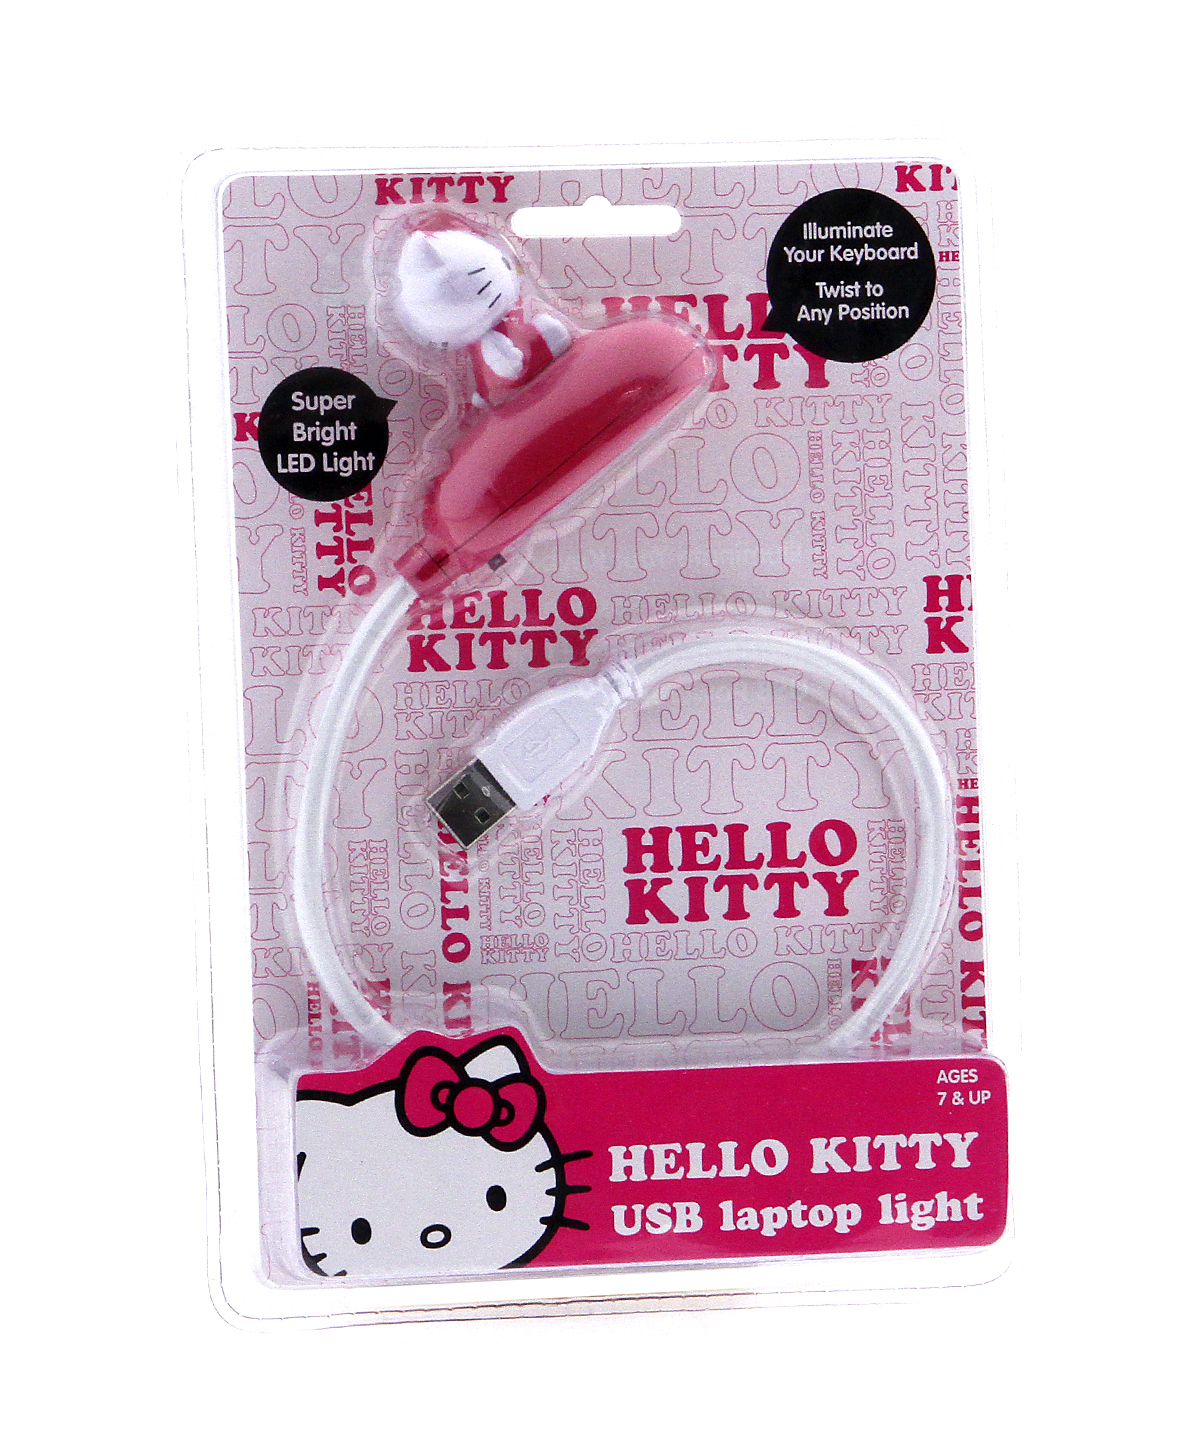 Hello Kitty USB Laptop Lamp - 第 1/1 張圖片